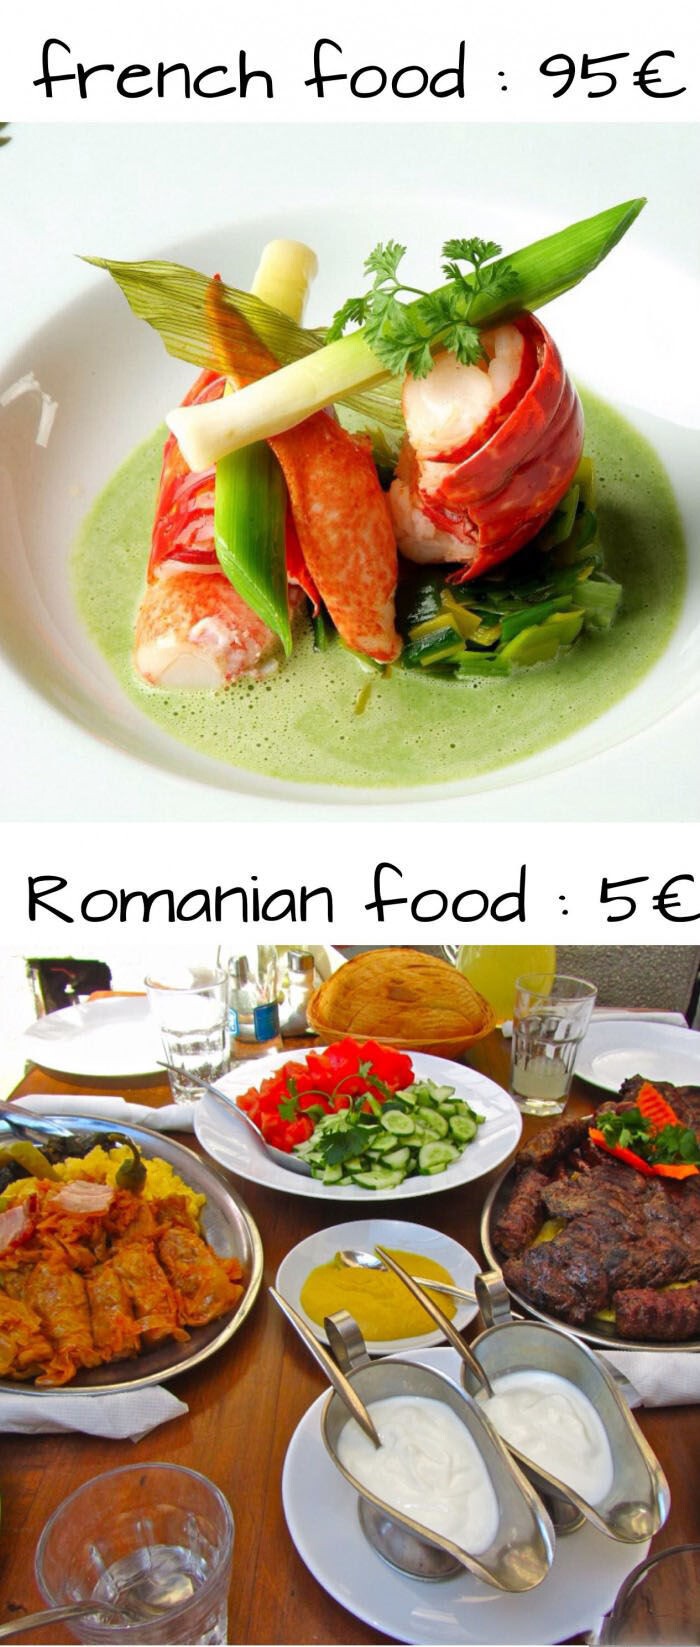 Сравнение блюд и цен Франции и Румынии